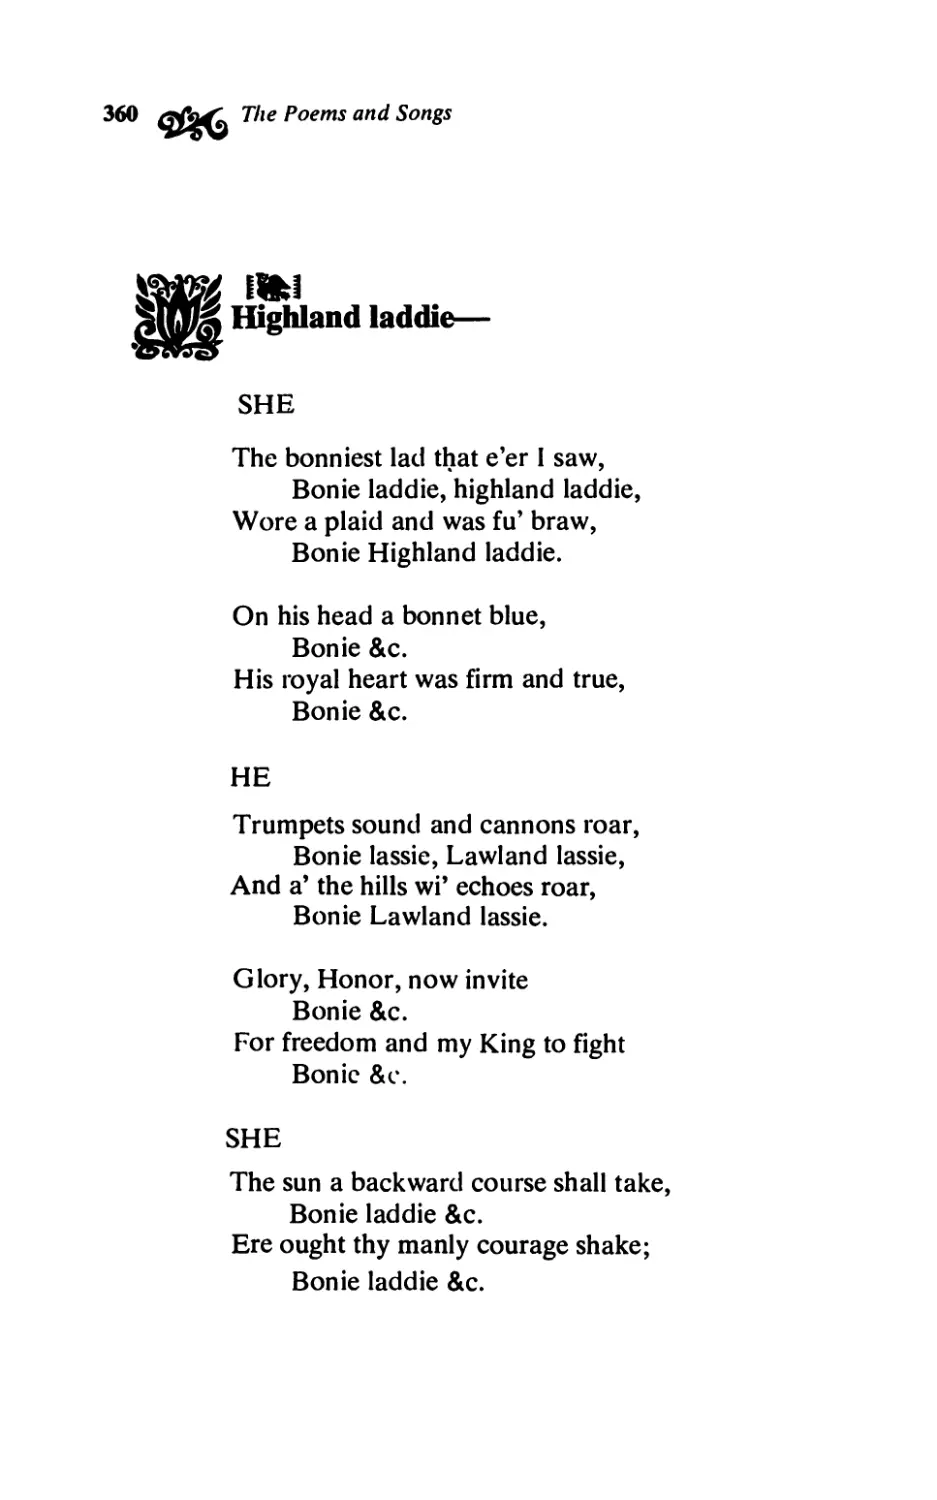 Highland laddie-